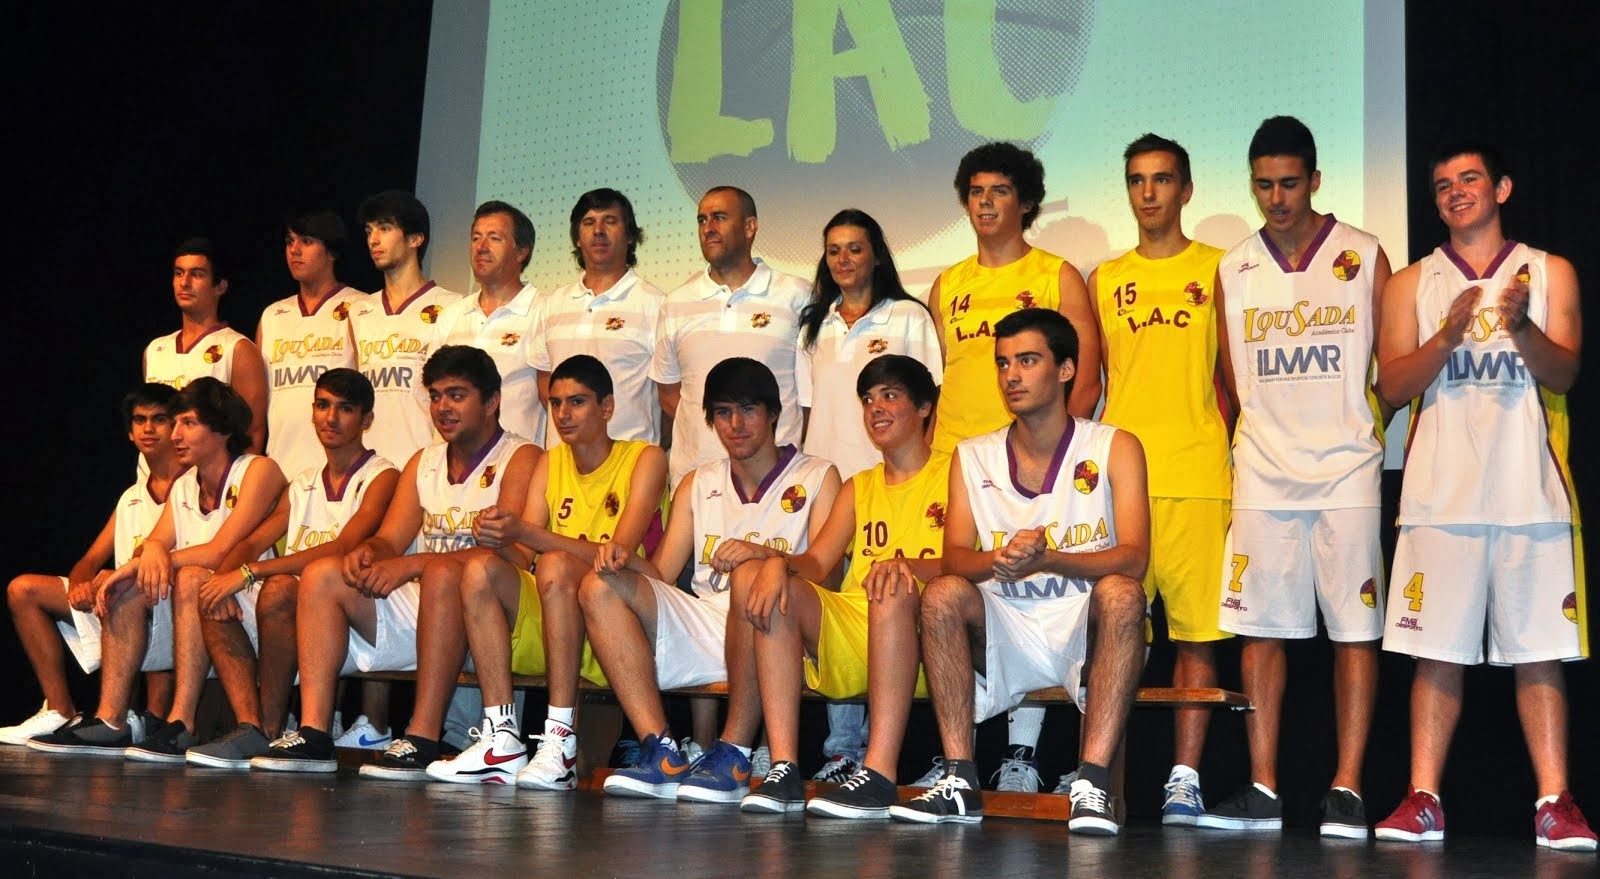 Juniores B Masculinos 2013-2014